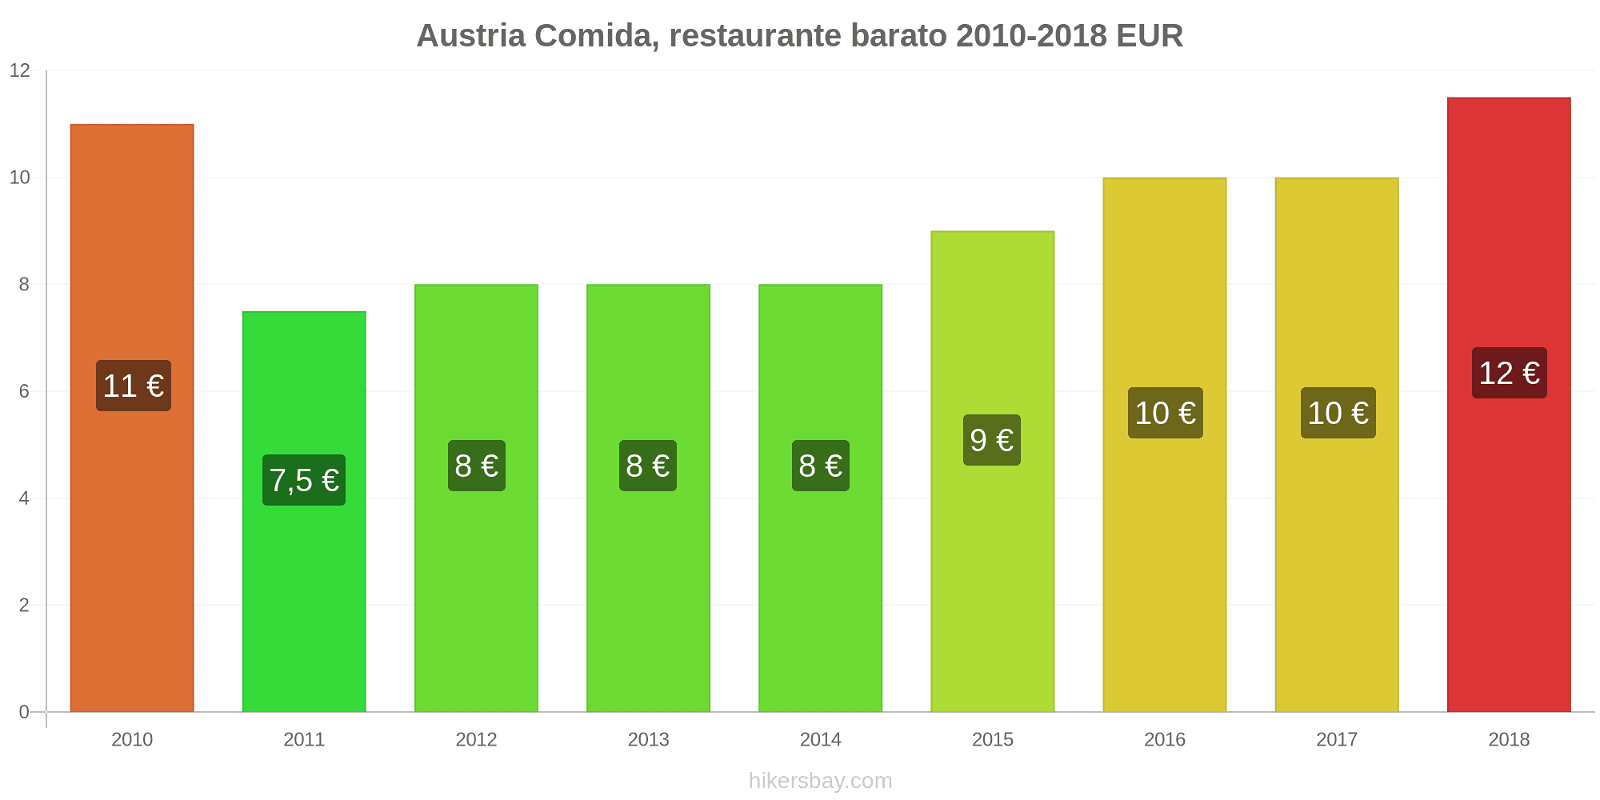 Austria cambios de precios Comida en un restaurante económico hikersbay.com